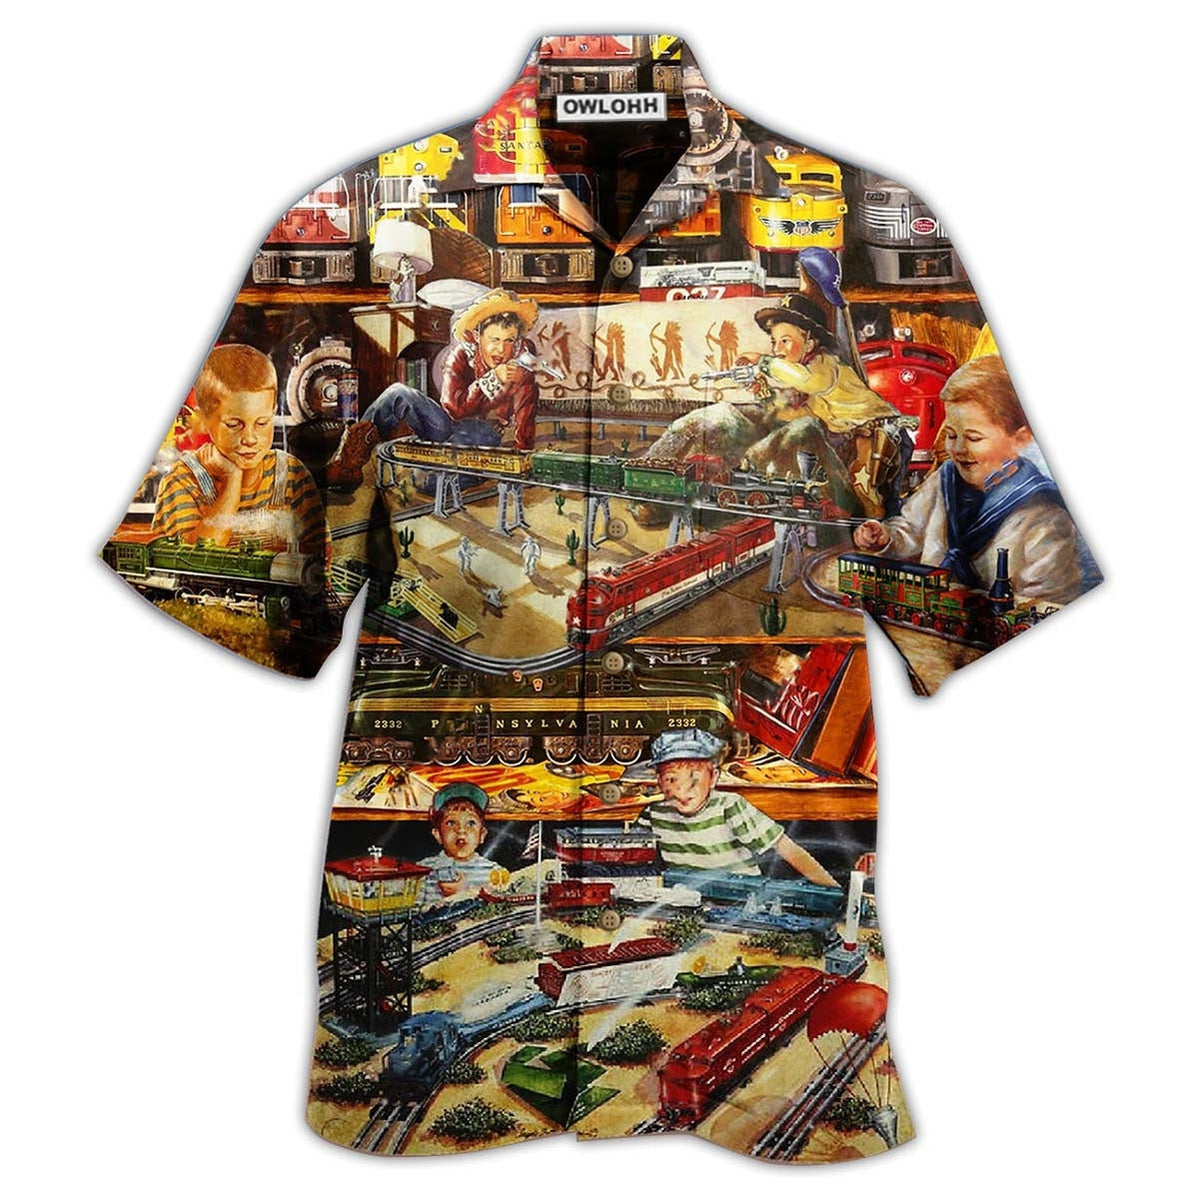 Hawaiian Shirt / Adults / S Train Toys Amazing Vintage Style - Hawaiian Shirt - Owls Matrix LTD